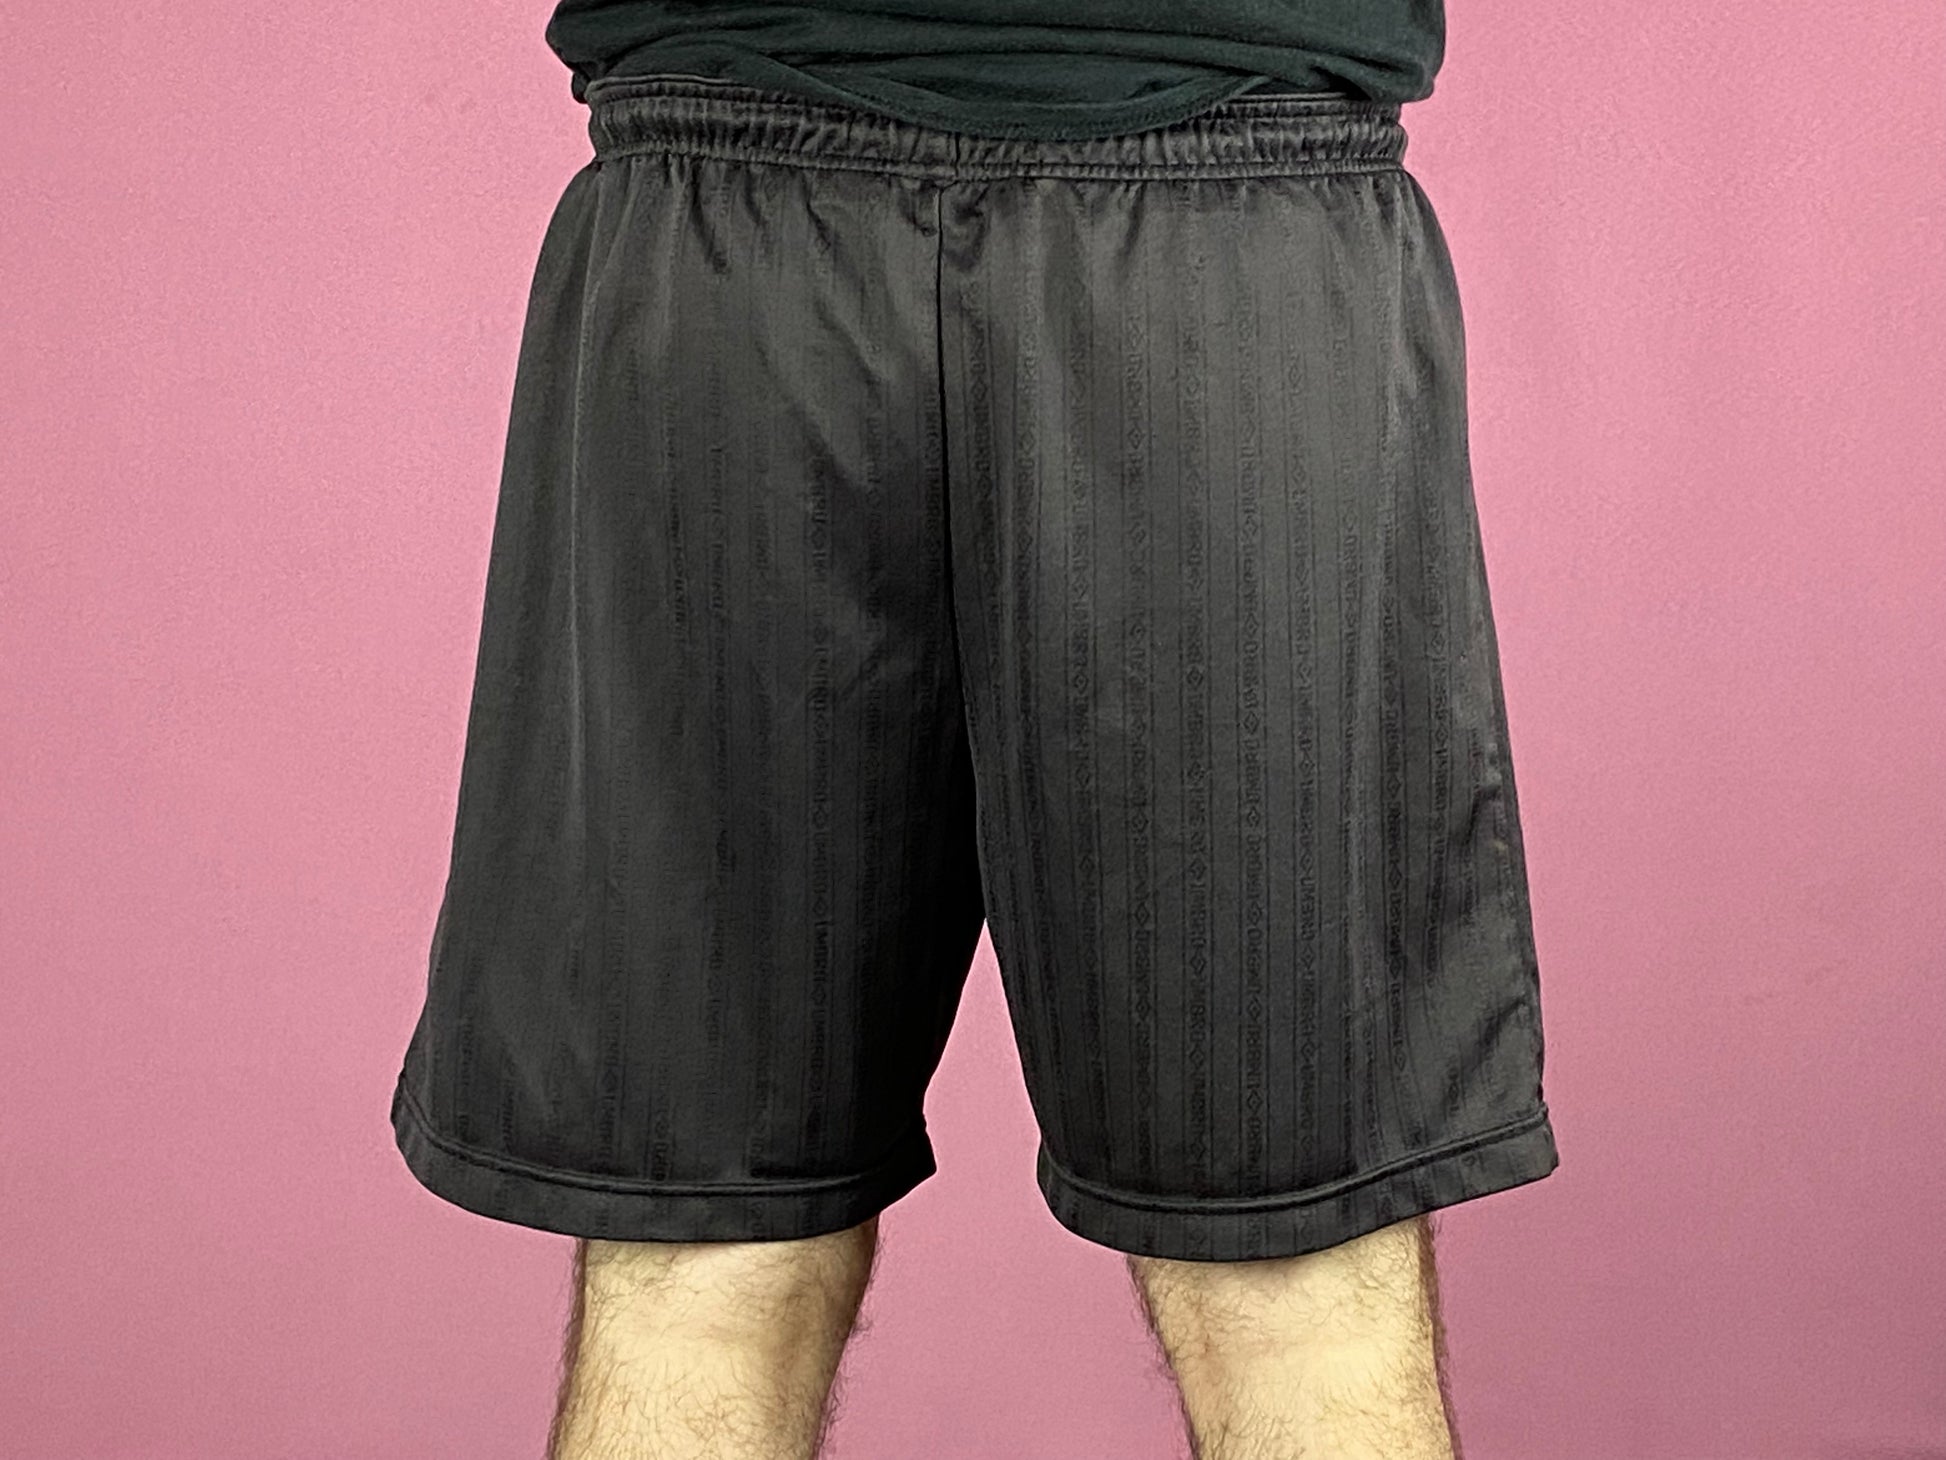 Umbro Vintage Men's Track Shorts - Large Black Polyester